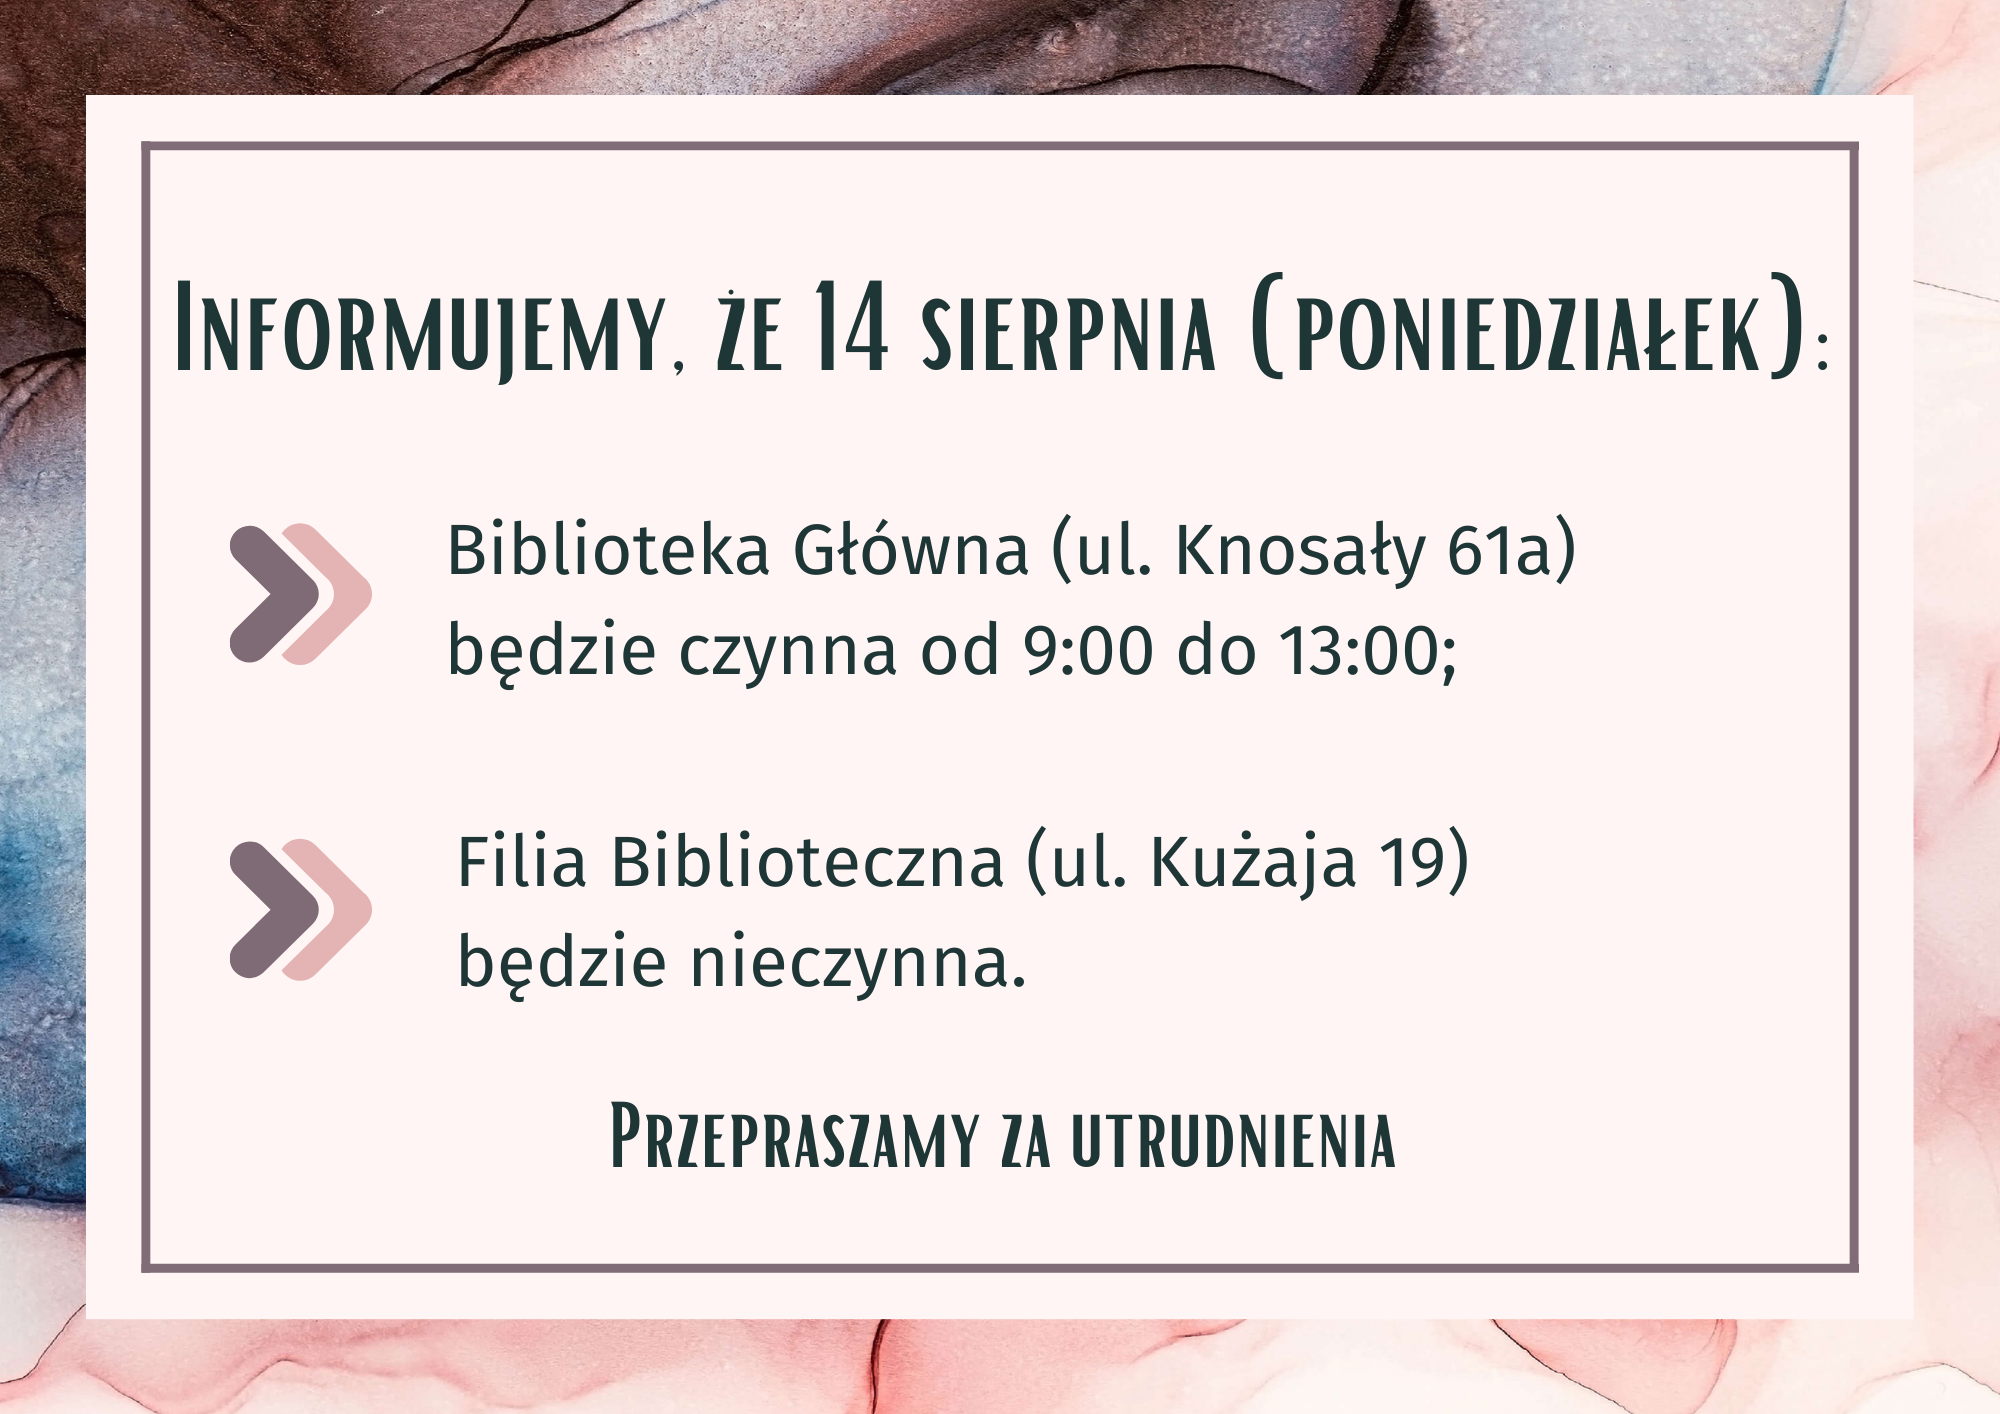 14.08 Filia Biblioteczna będzie nieczynna, zaś Biblioteka Główna będzie czynna w godzinach 9.00-13.00